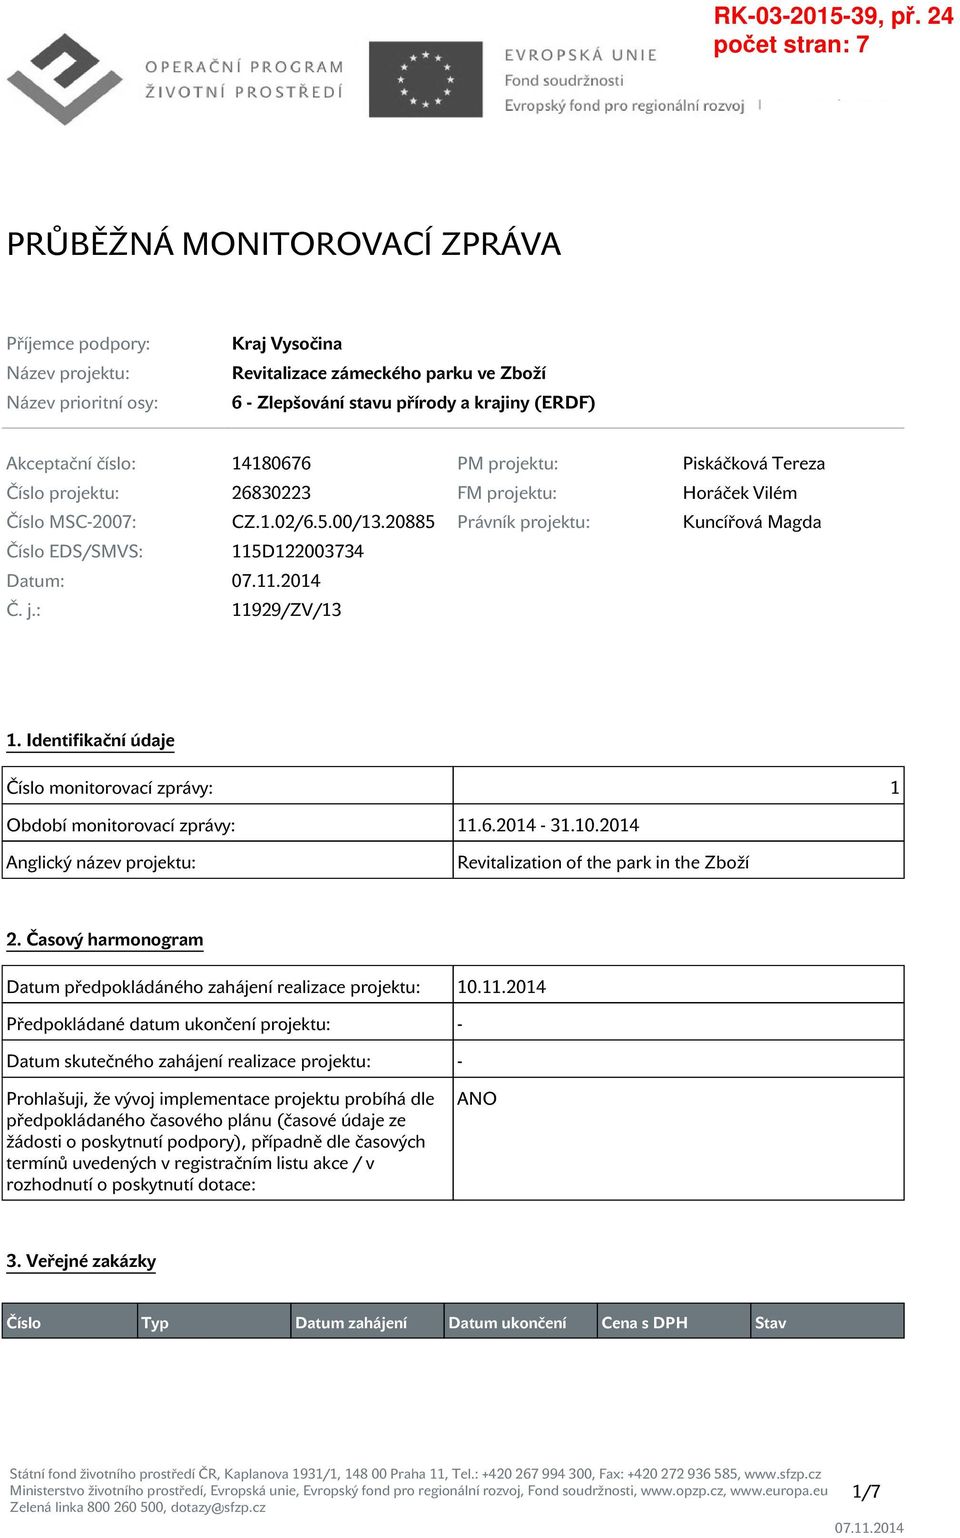 20885 Právník projektu: Kuncířová Magda Číslo EDS/SMVS: 115D122003734 Datum: Č. j.: 11929/ZV/13 1. Identifikační údaje Číslo monitorovací zprávy: 1 Období monitorovací zprávy: 11.6.2014-31.10.